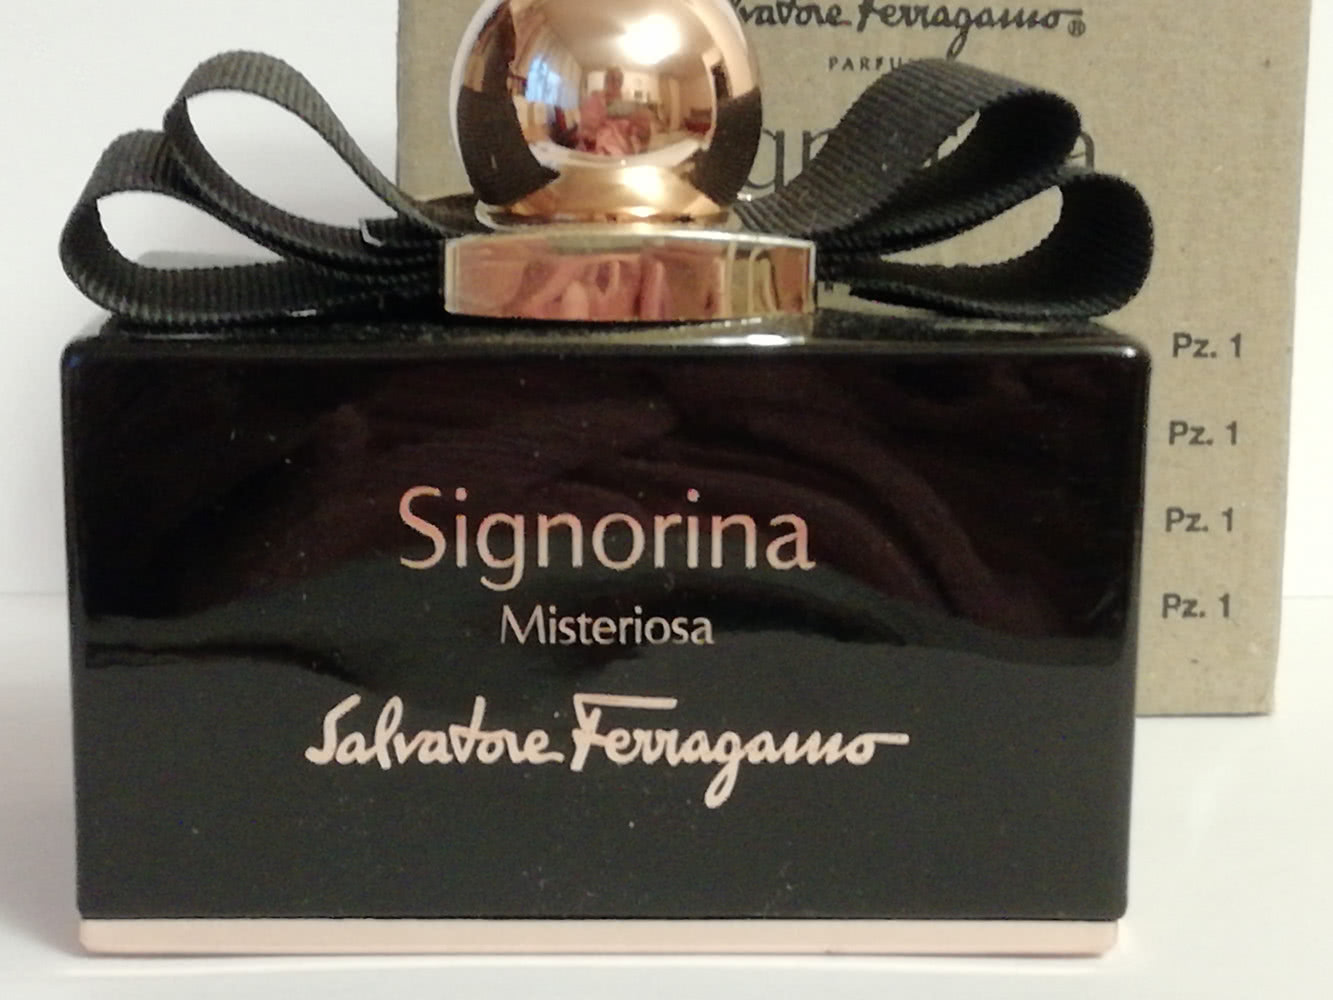 Signorina Misteriosa by Salvatore Ferragamo EDP 100ml